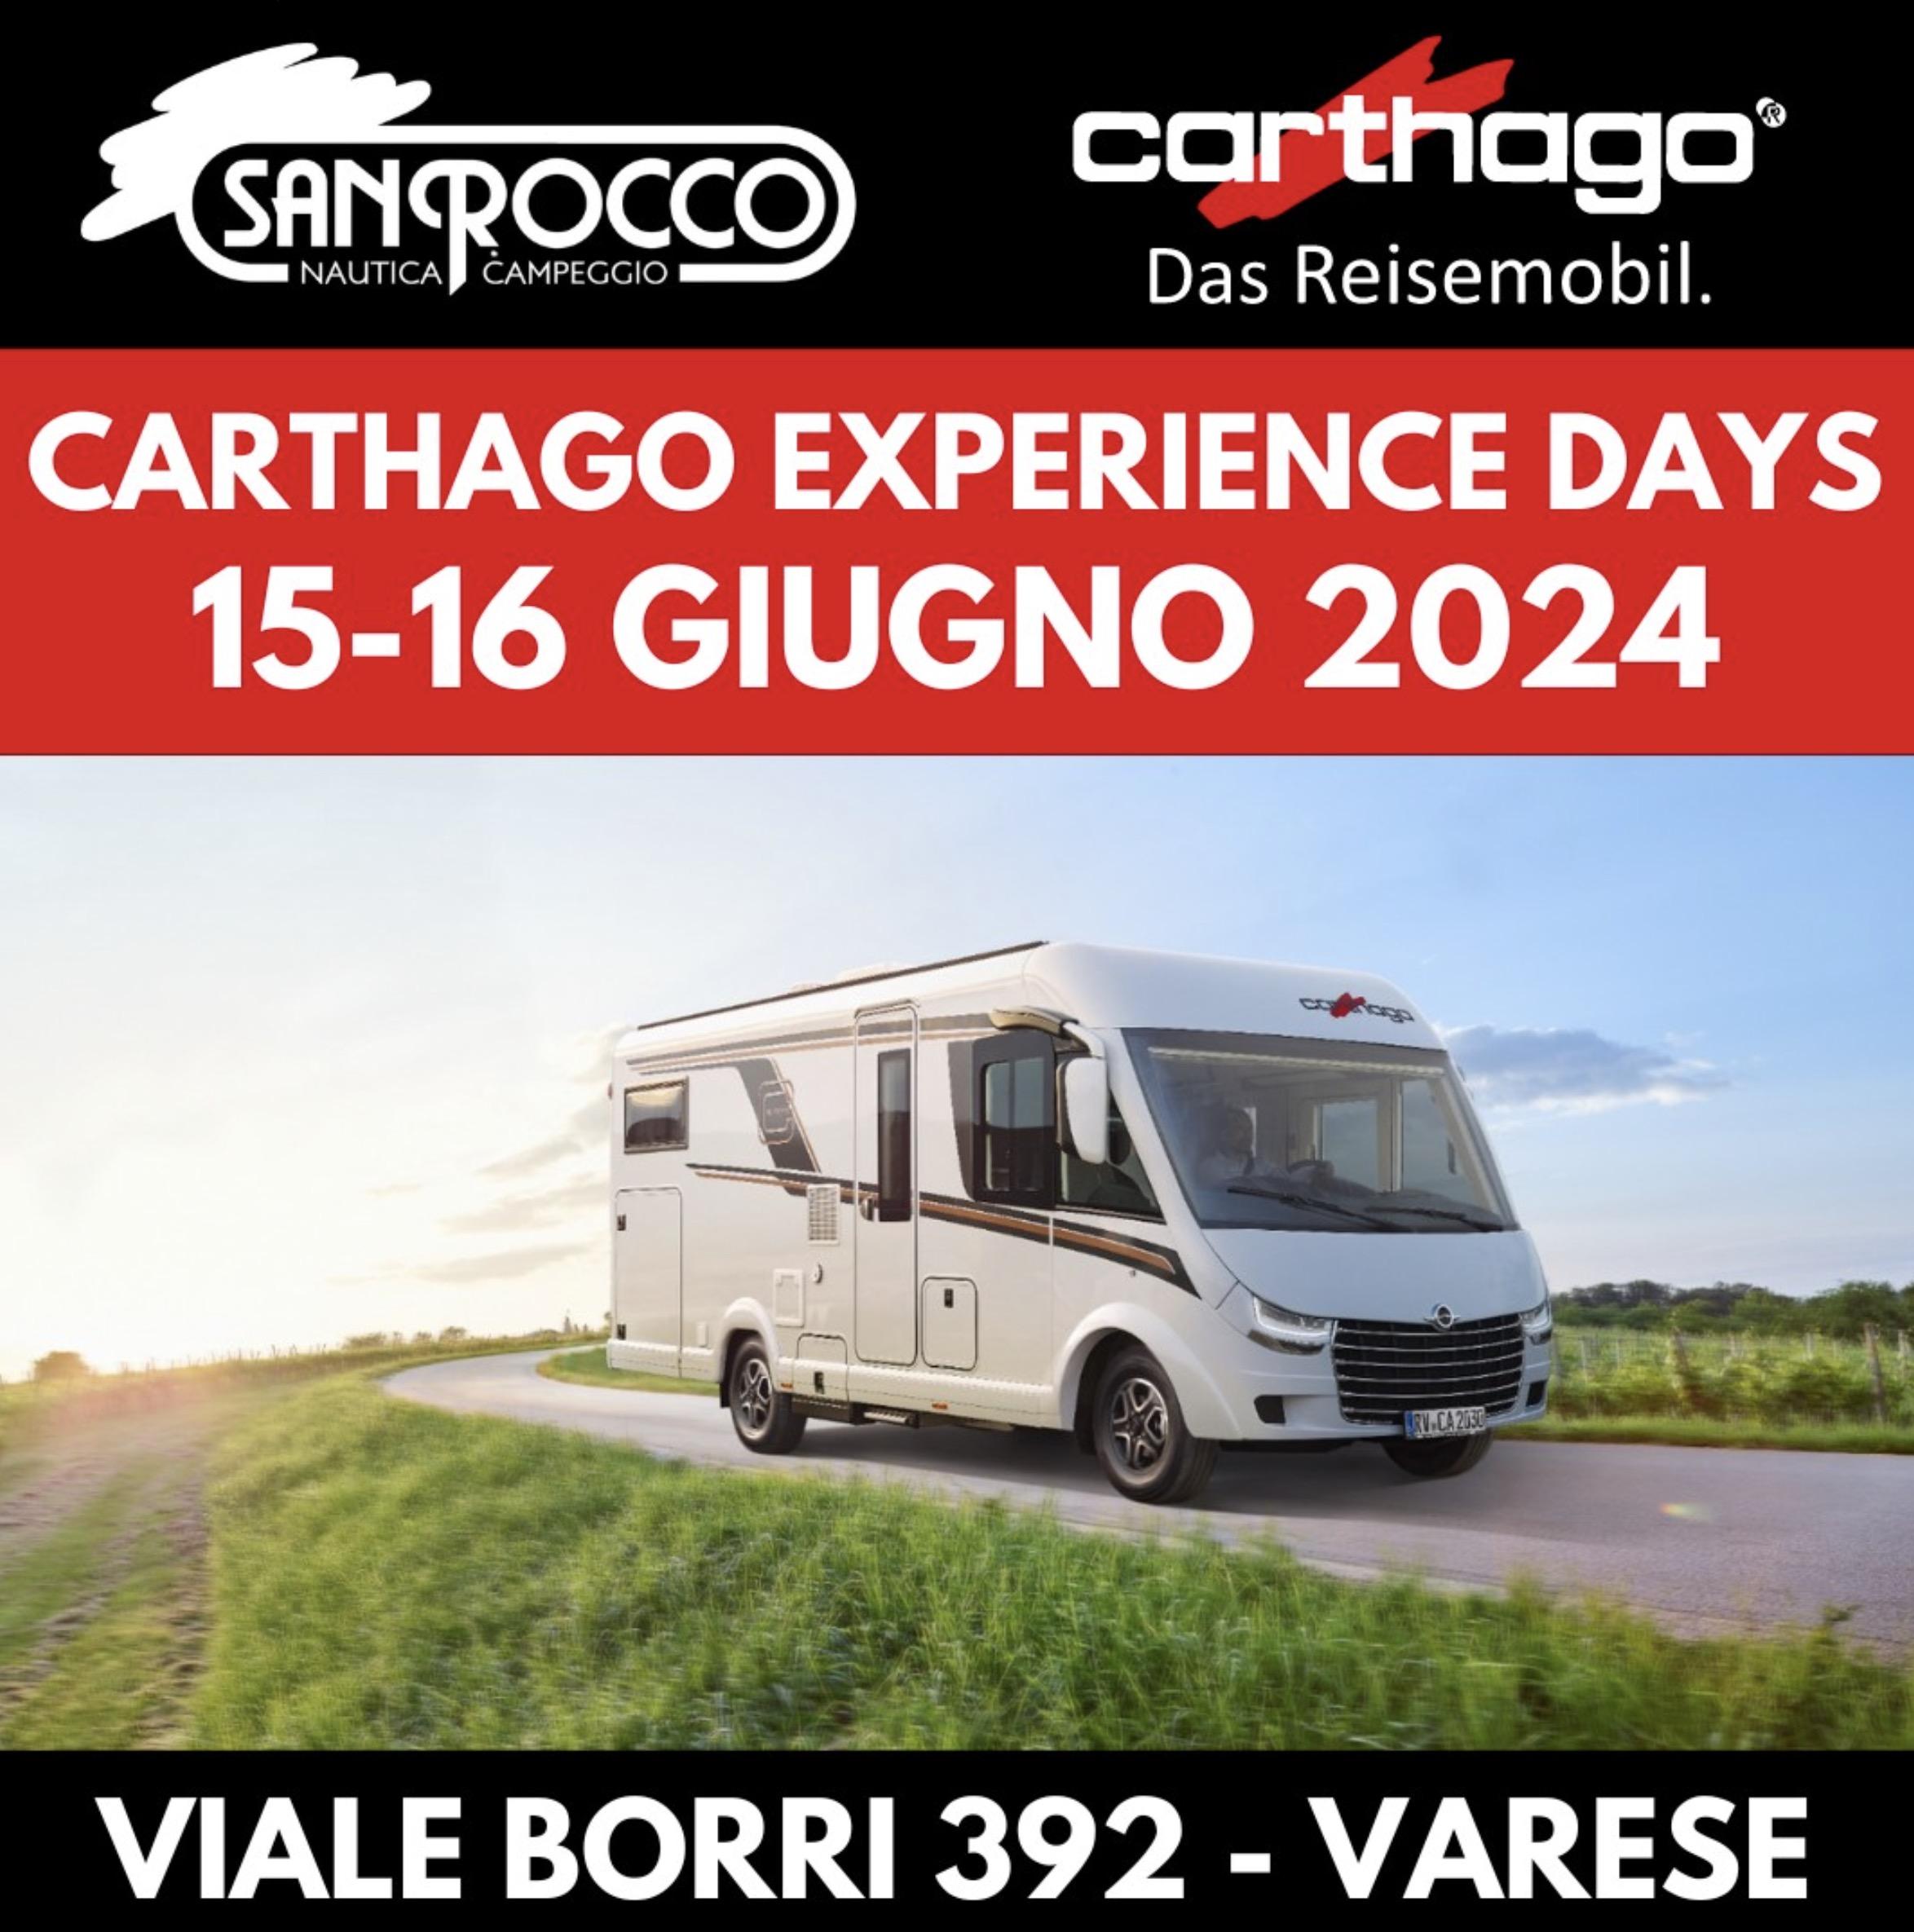 Carthago Experience Days!